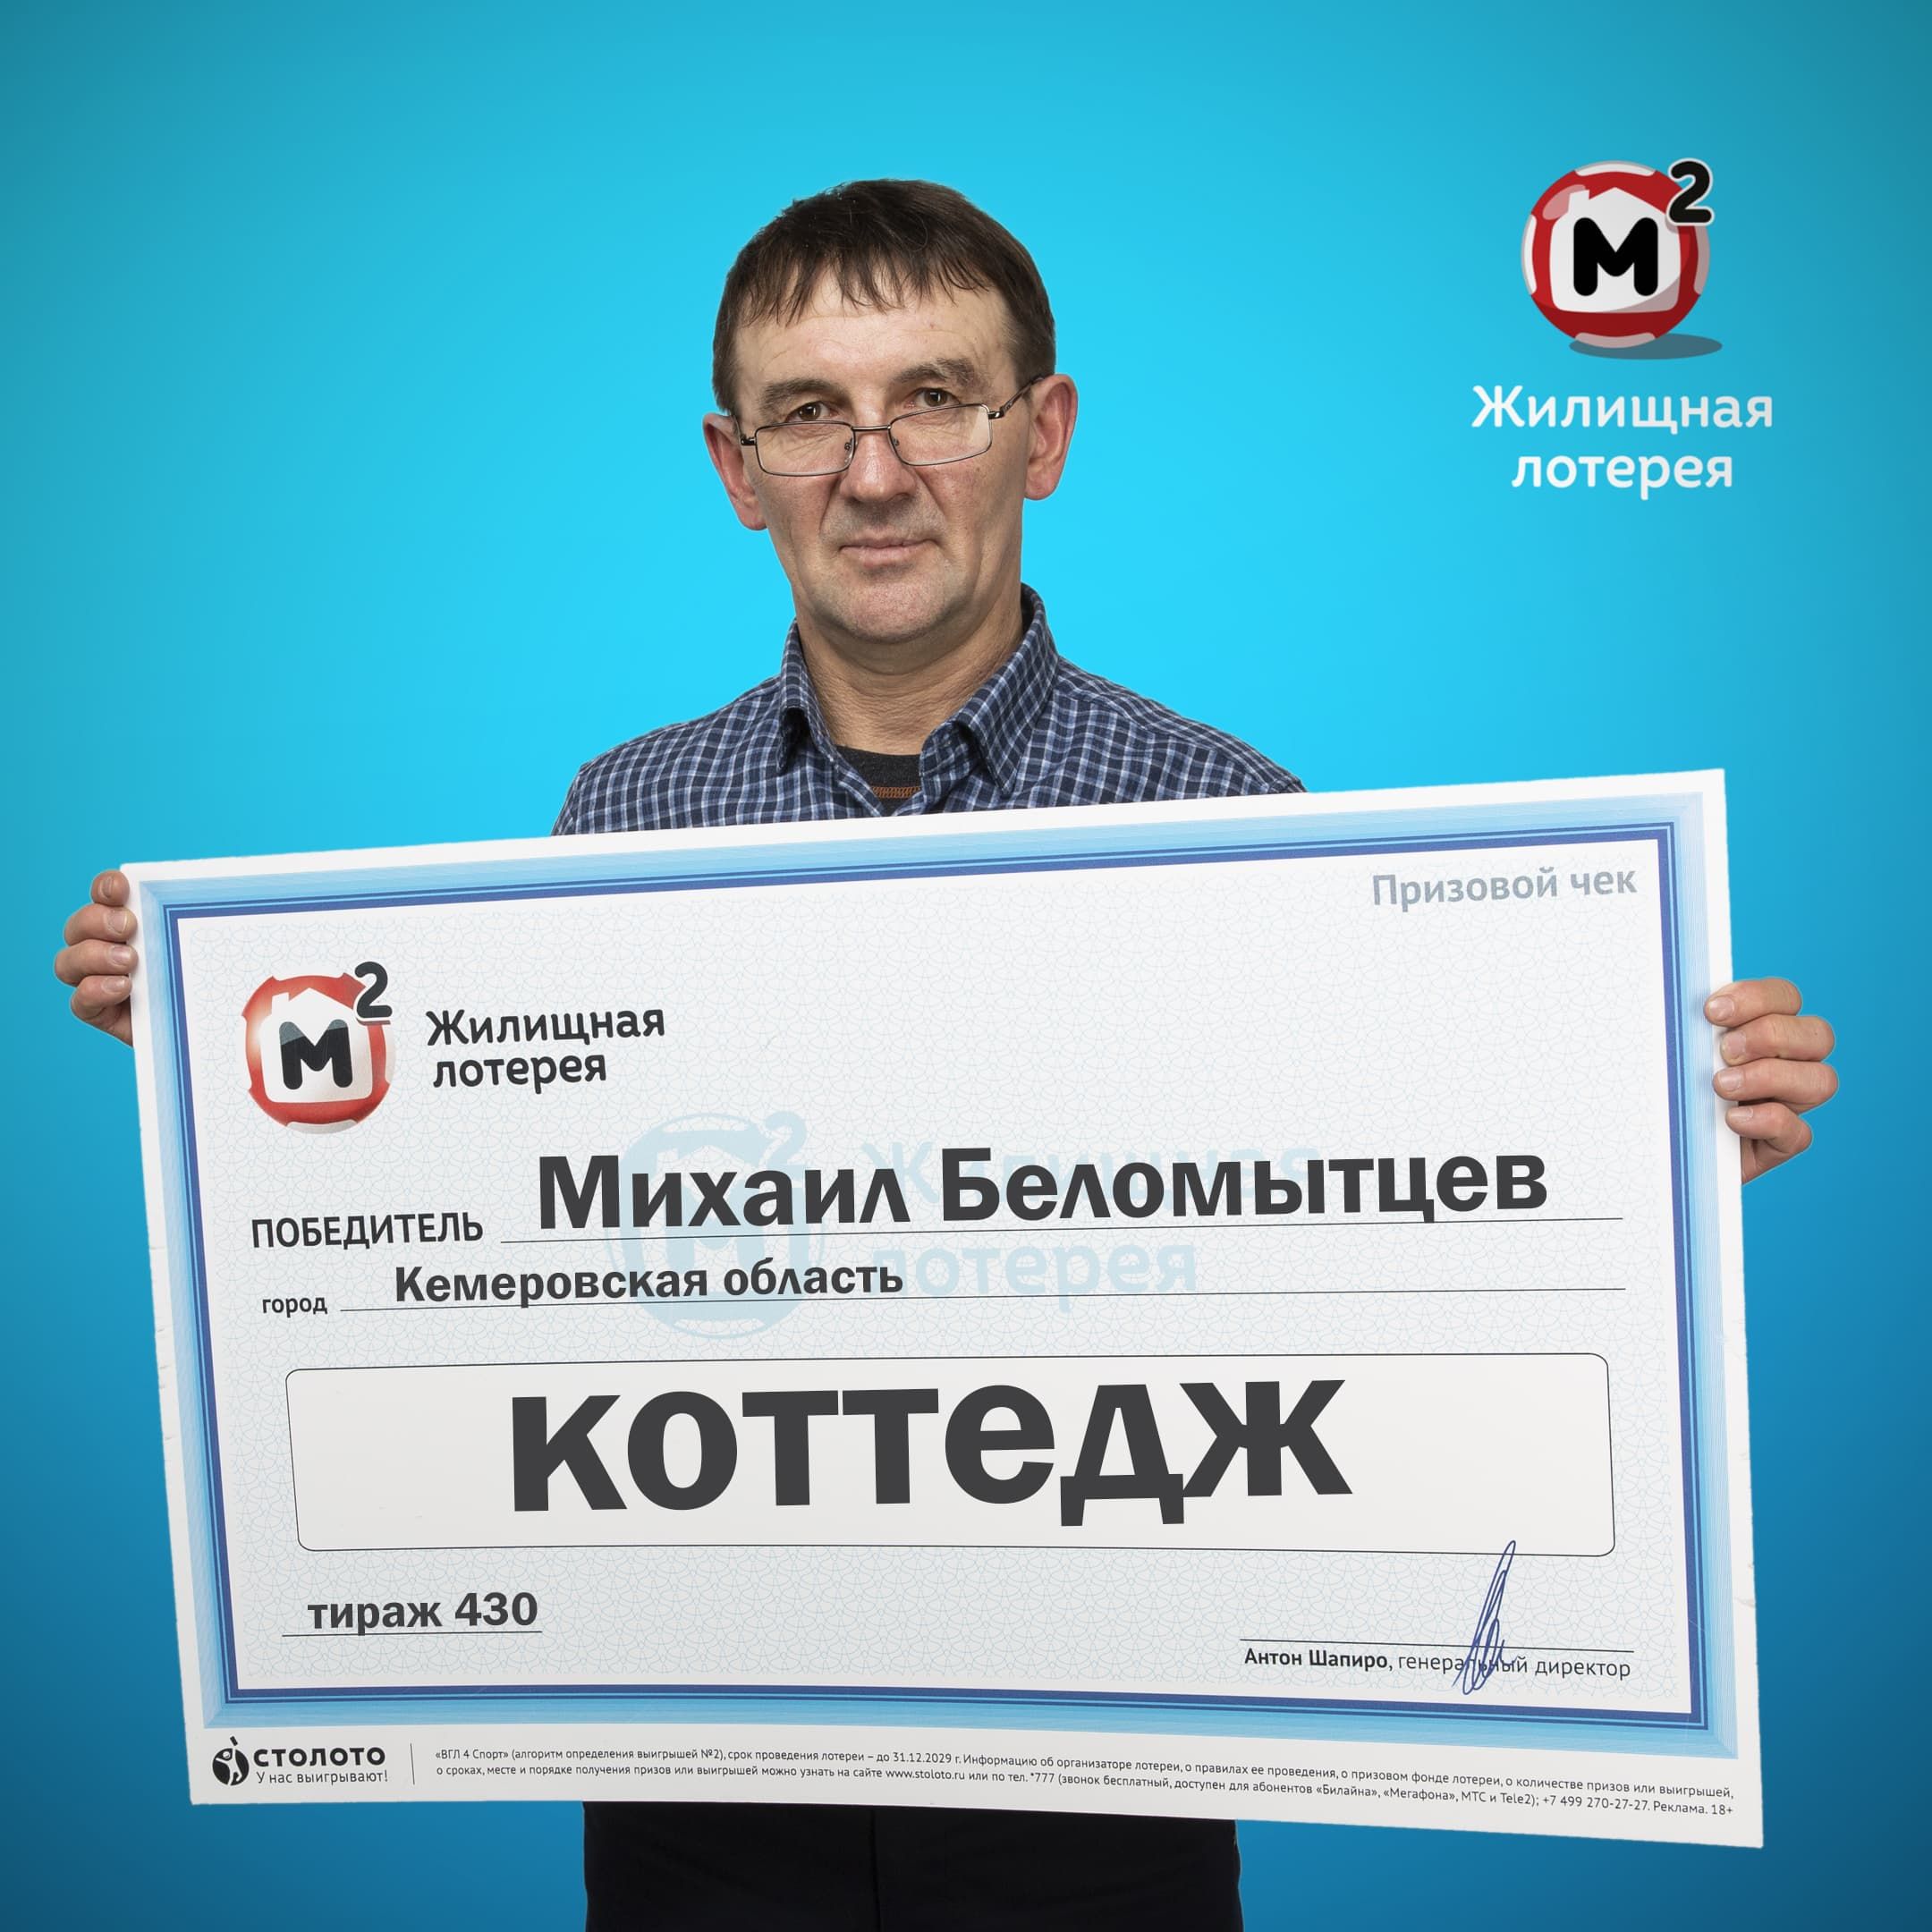 Михаил Беломытцев, победитель «Жилищной лотереи»